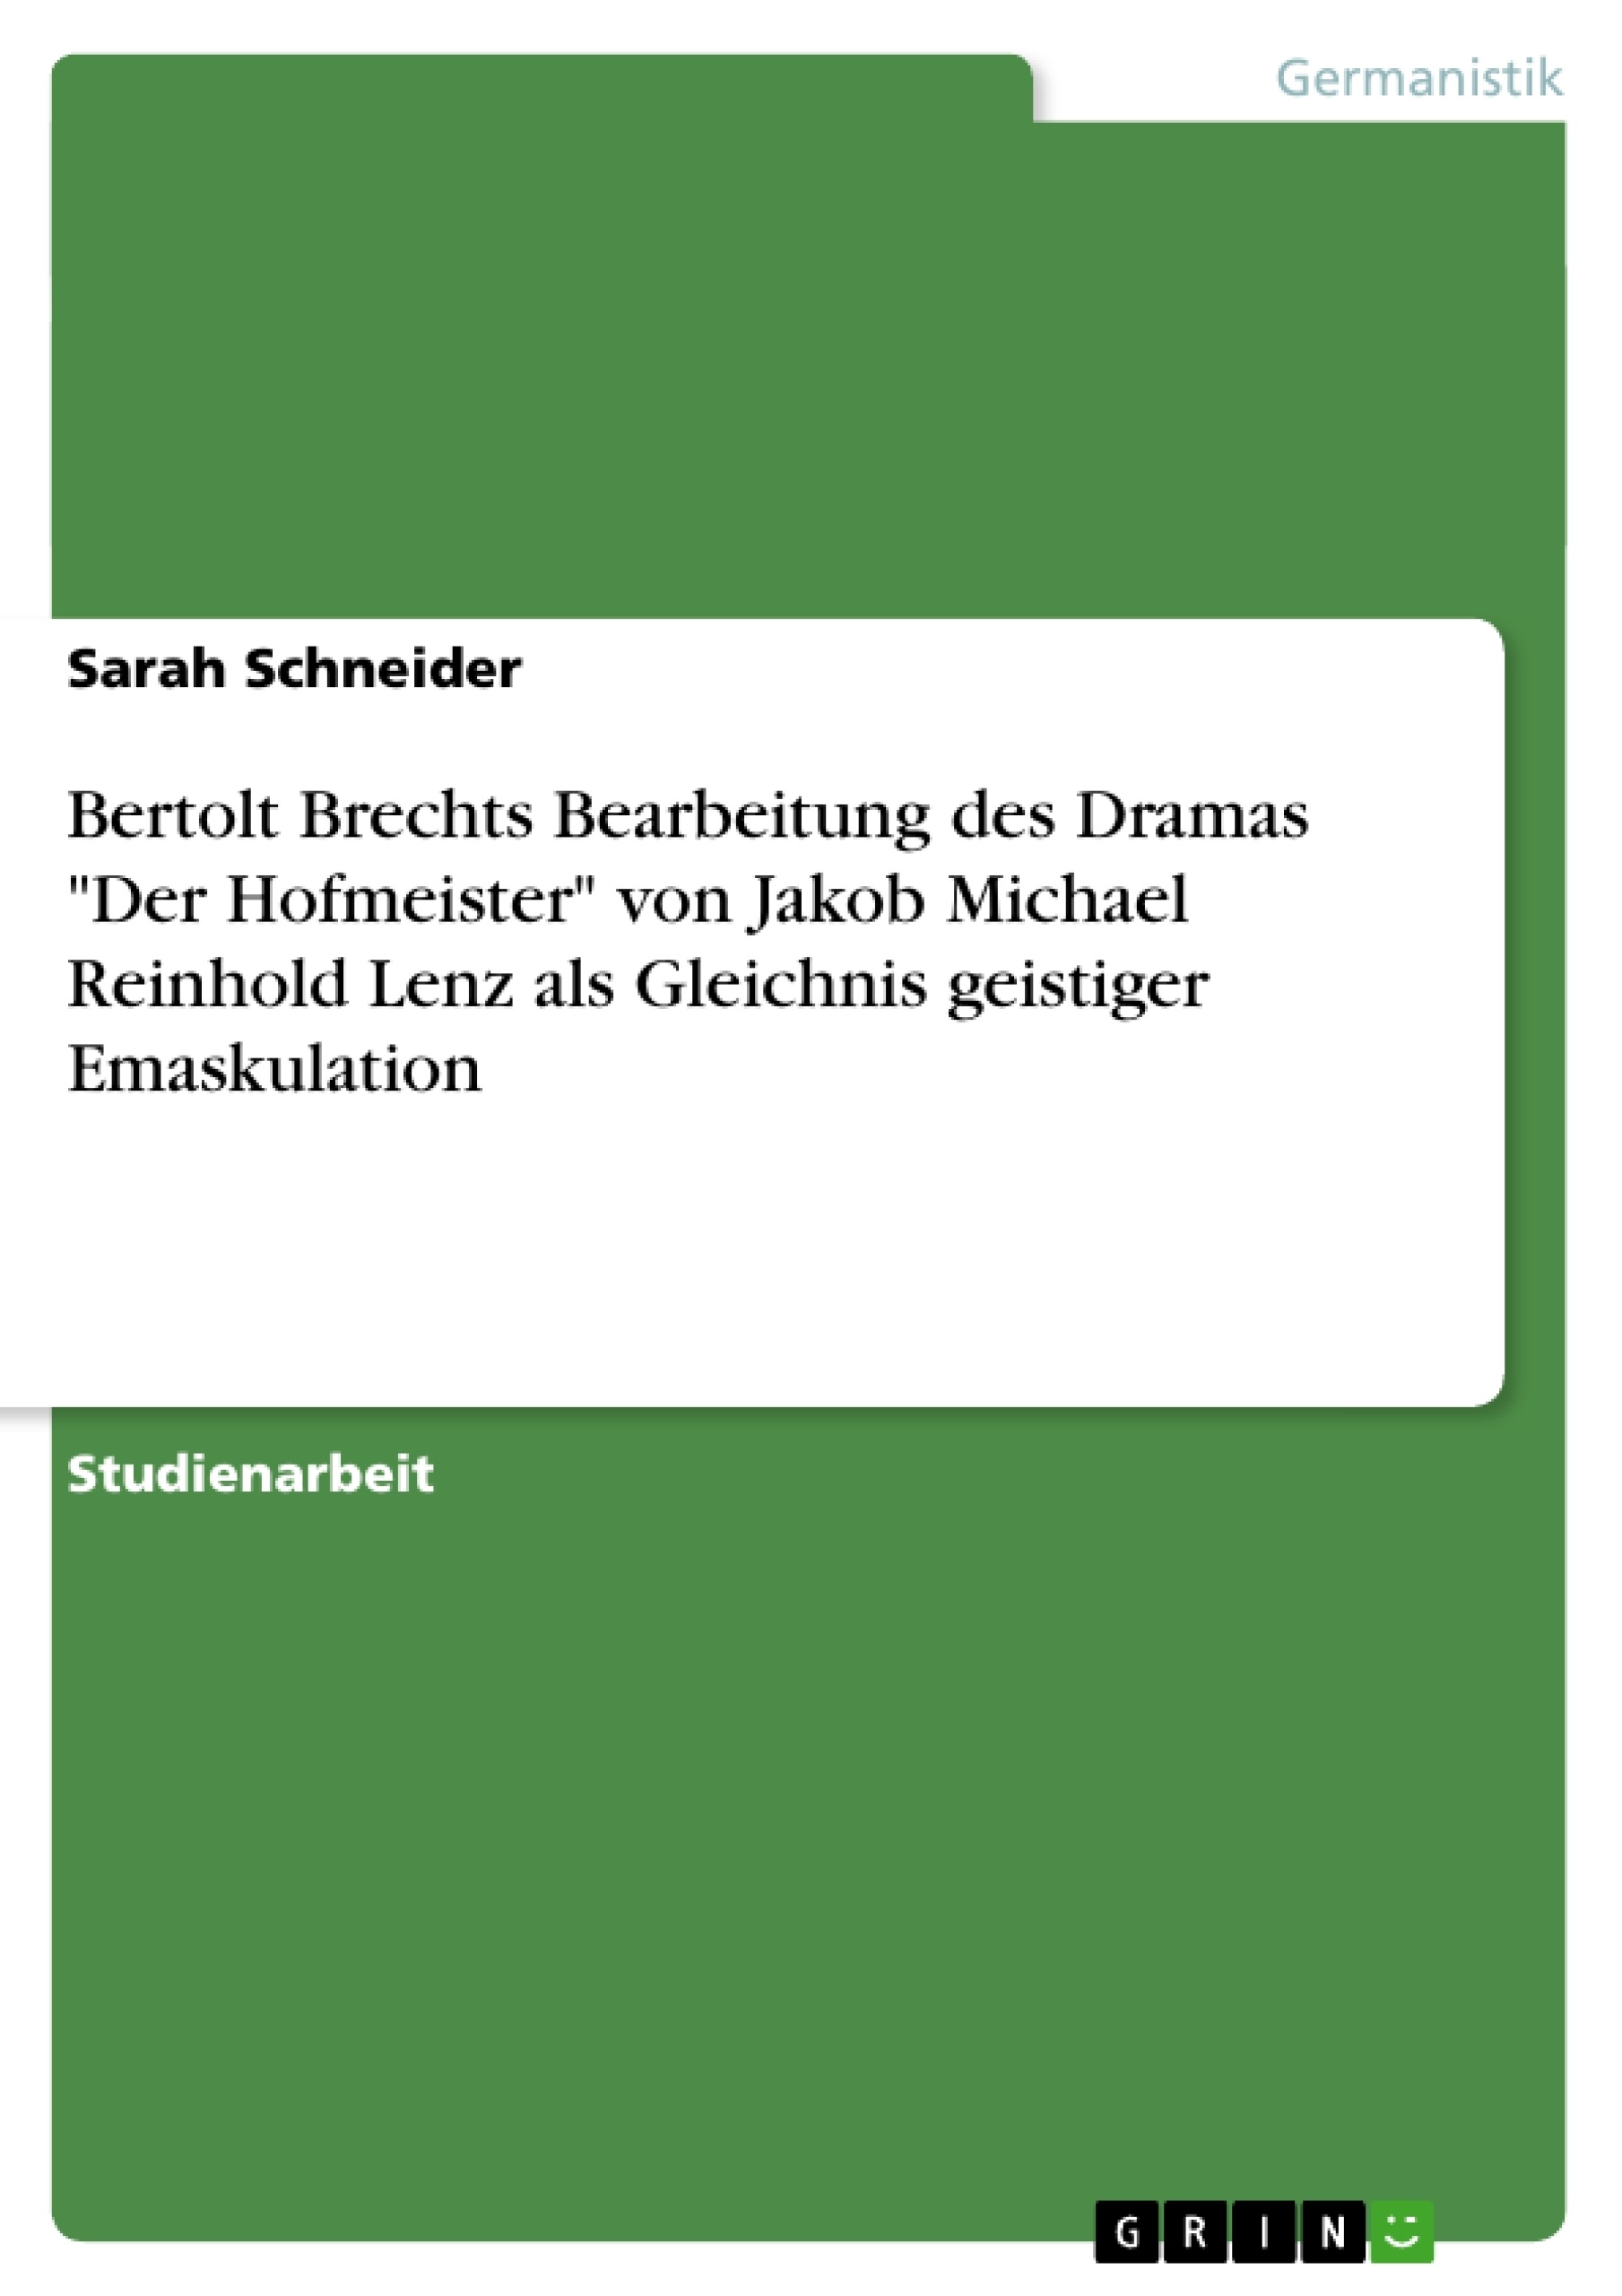 Title: Bertolt Brechts Bearbeitung des Dramas "Der Hofmeister" von Jakob Michael Reinhold Lenz als Gleichnis geistiger Emaskulation